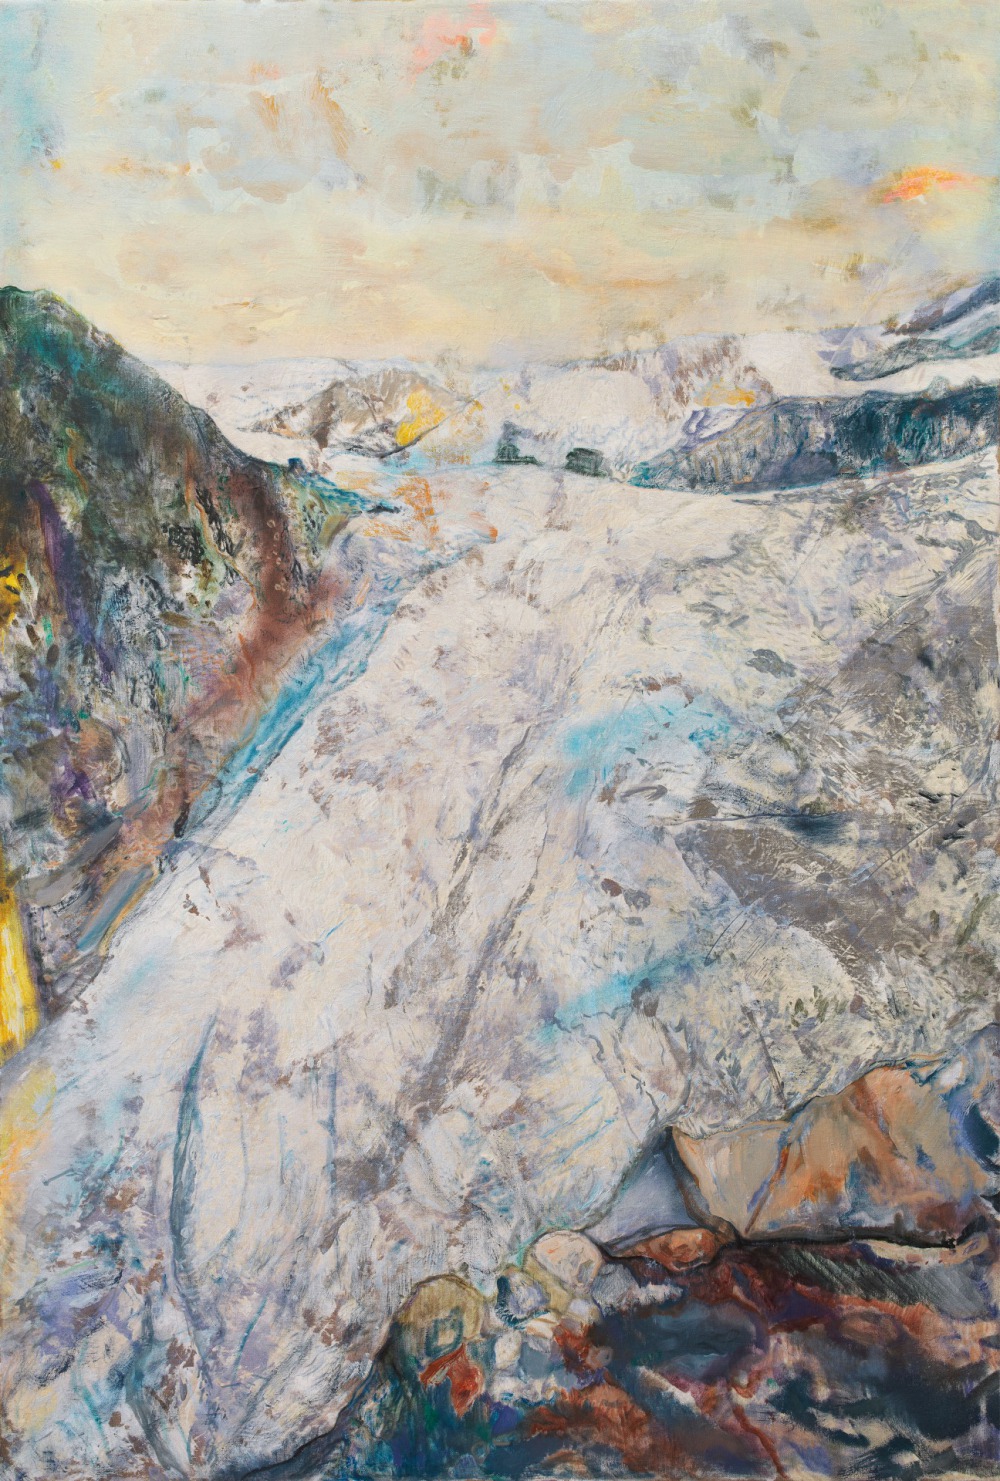 許聖泓 Glacier#9  100x150cm 噴漆 ‧ 油彩 ‧ 壓克力顏料 ‧ 畫布 2020<br />
